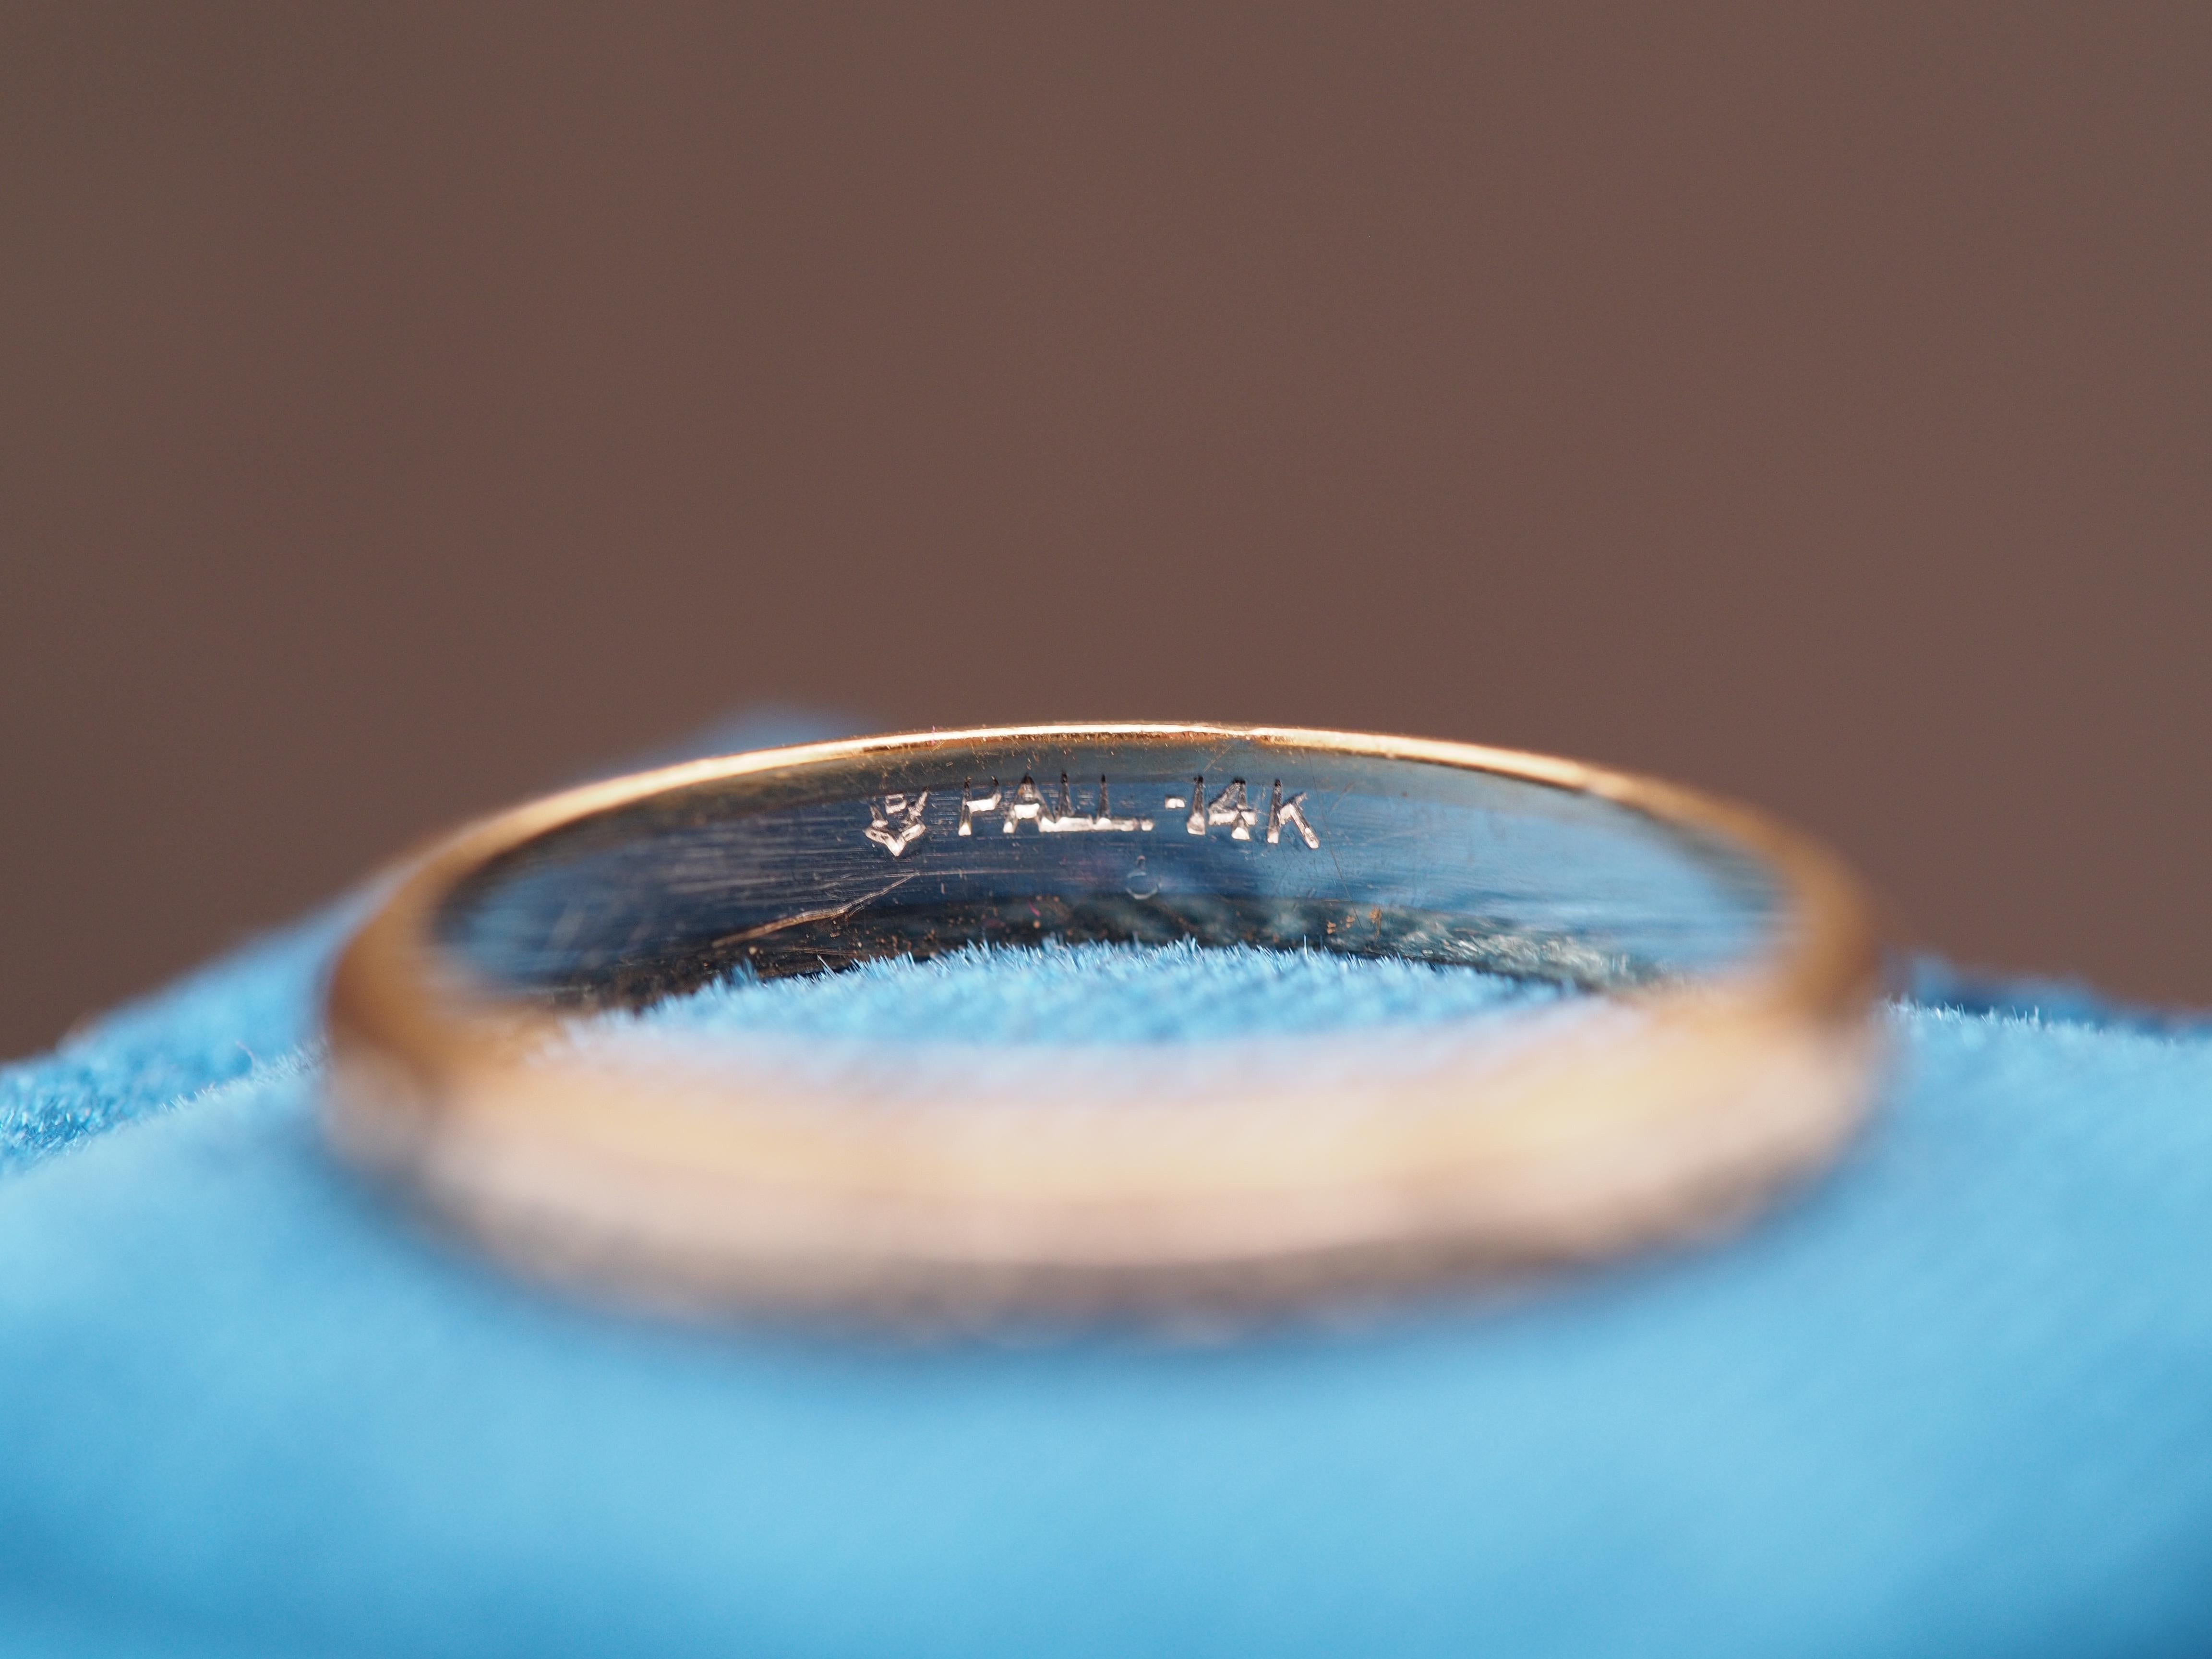 Jahr: 1920er Jahre
Artikel-Details:
Ringgröße: 6.75
Metall-Typ: Palladium und 14K Gelbgold [gestempelt und geprüft]
Gewicht: 2,0 Gramm
Breite des Bandes: 2.9 mm
Zustand: Ausgezeichnet
Preis: 800

Dieser Ring kann gegen einen Aufpreis von $40 um 4